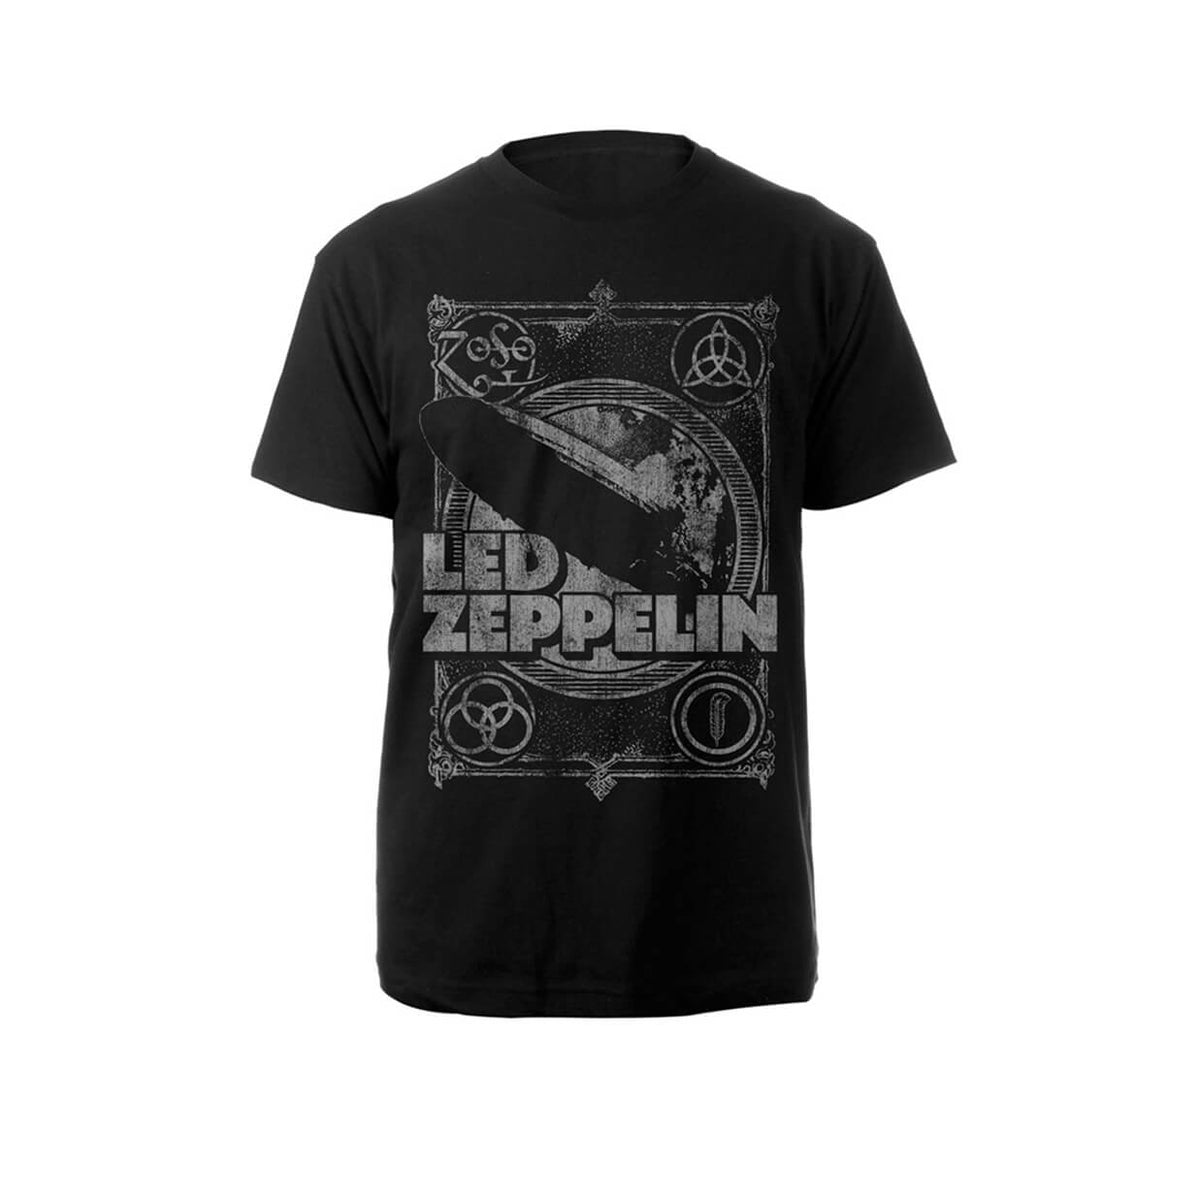 Vinyl - Led Zeppelin : Vintage Print Lz1 - T-Shirt - The Record Hub